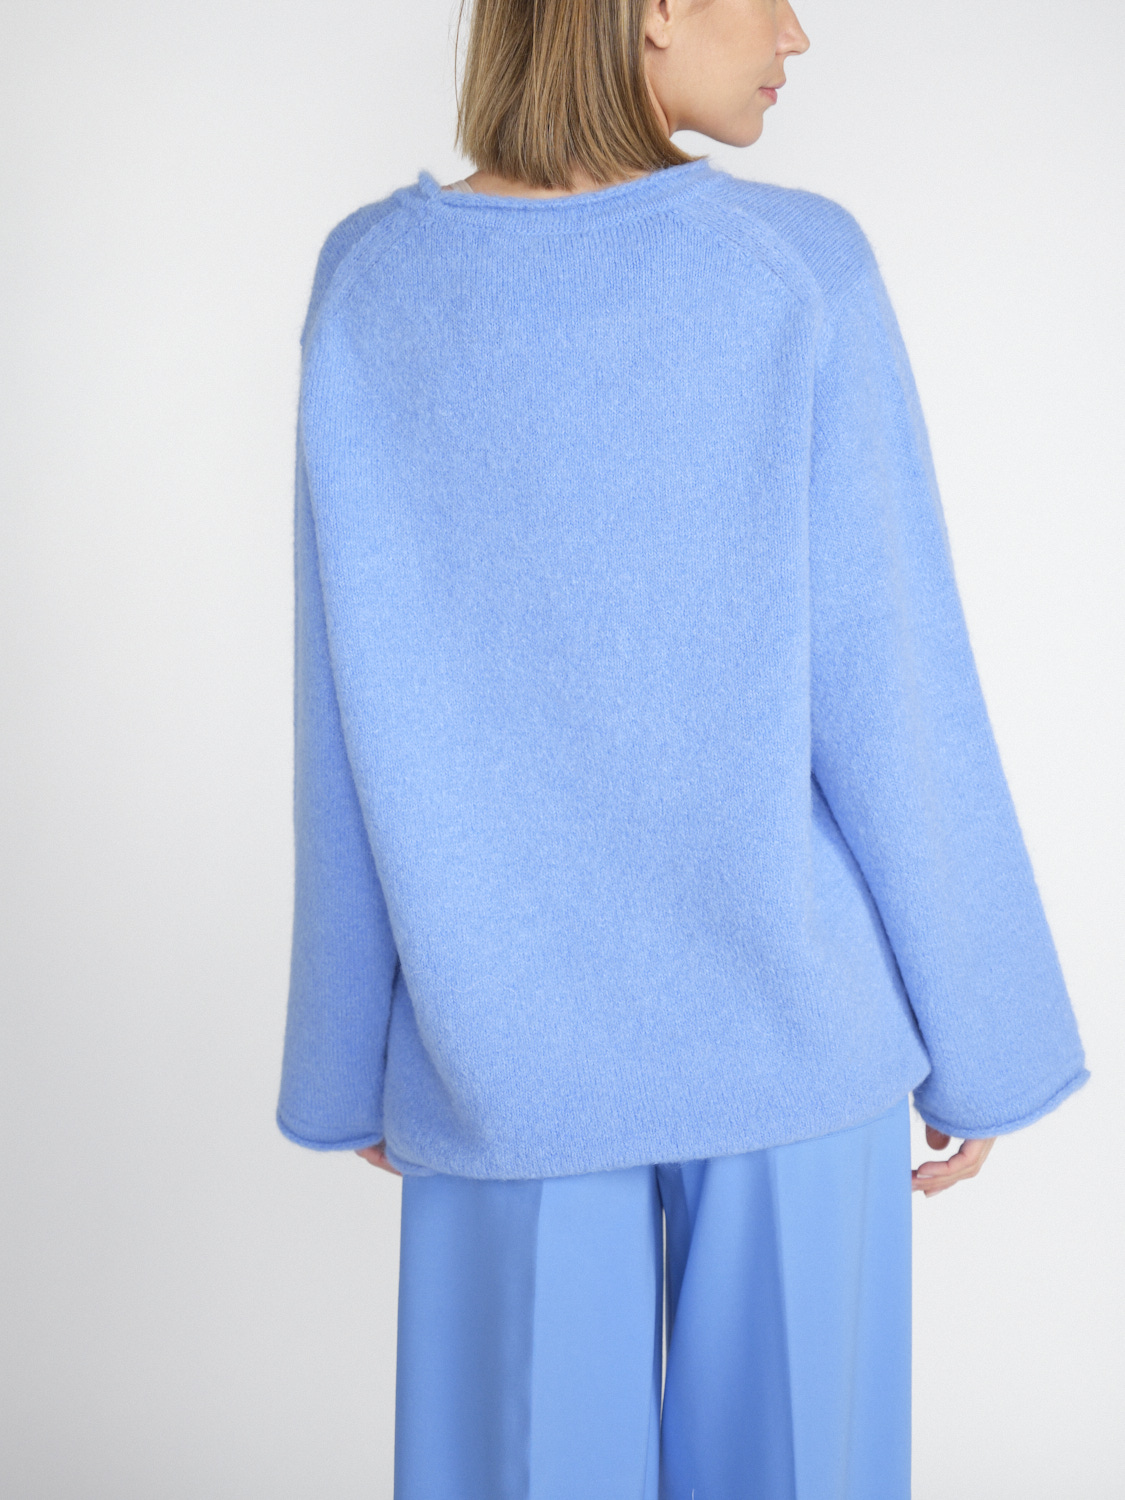 Dorothee Schumacher Cozy Comfort - Jersey oversize en mezcla de alpaca  azul M